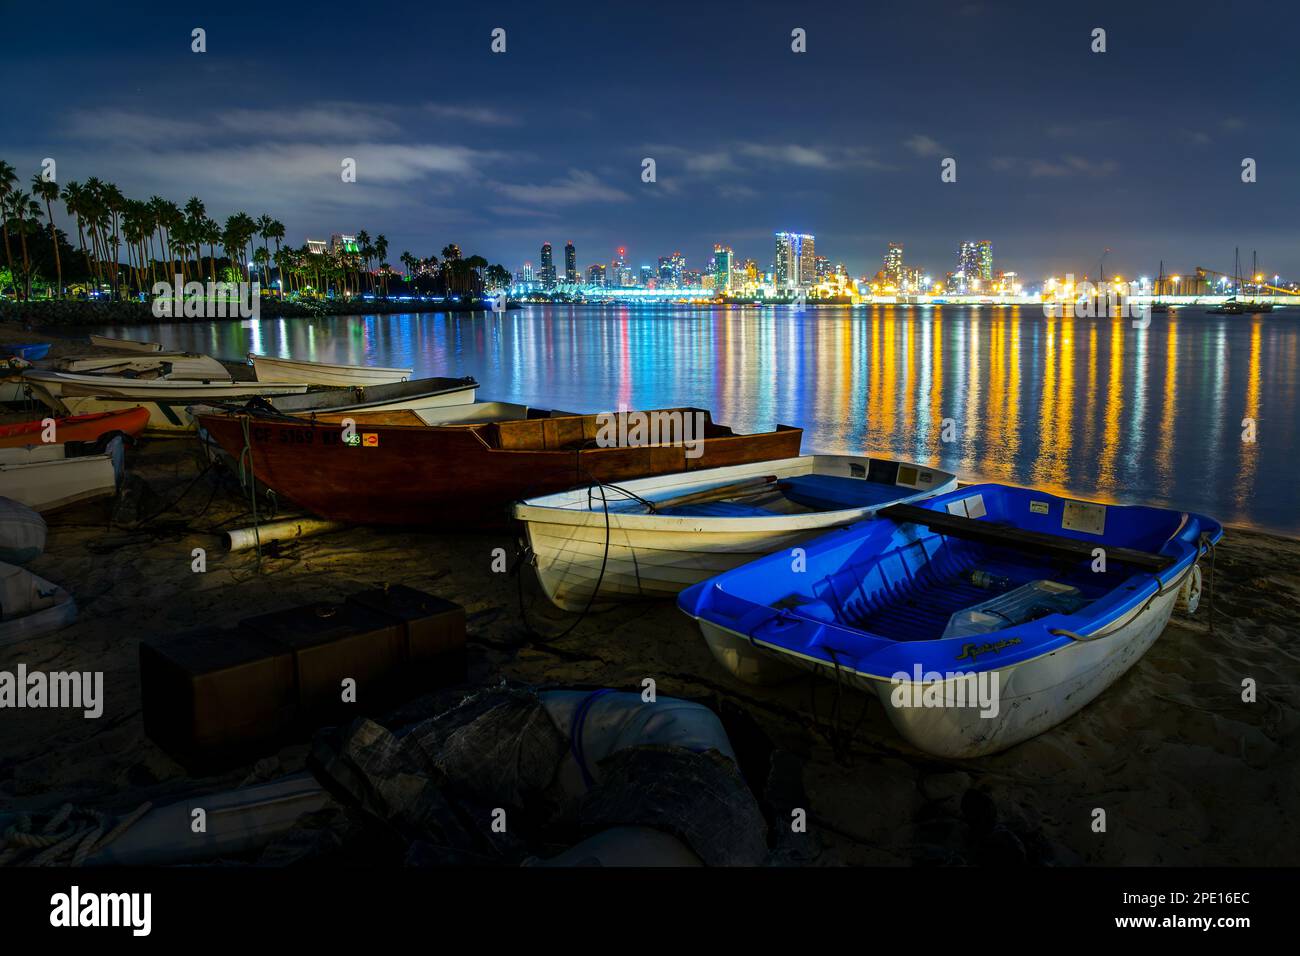 Bateaux sur l'île de Coronado, baie de San Diego et horizon la nuit, Californie Banque D'Images